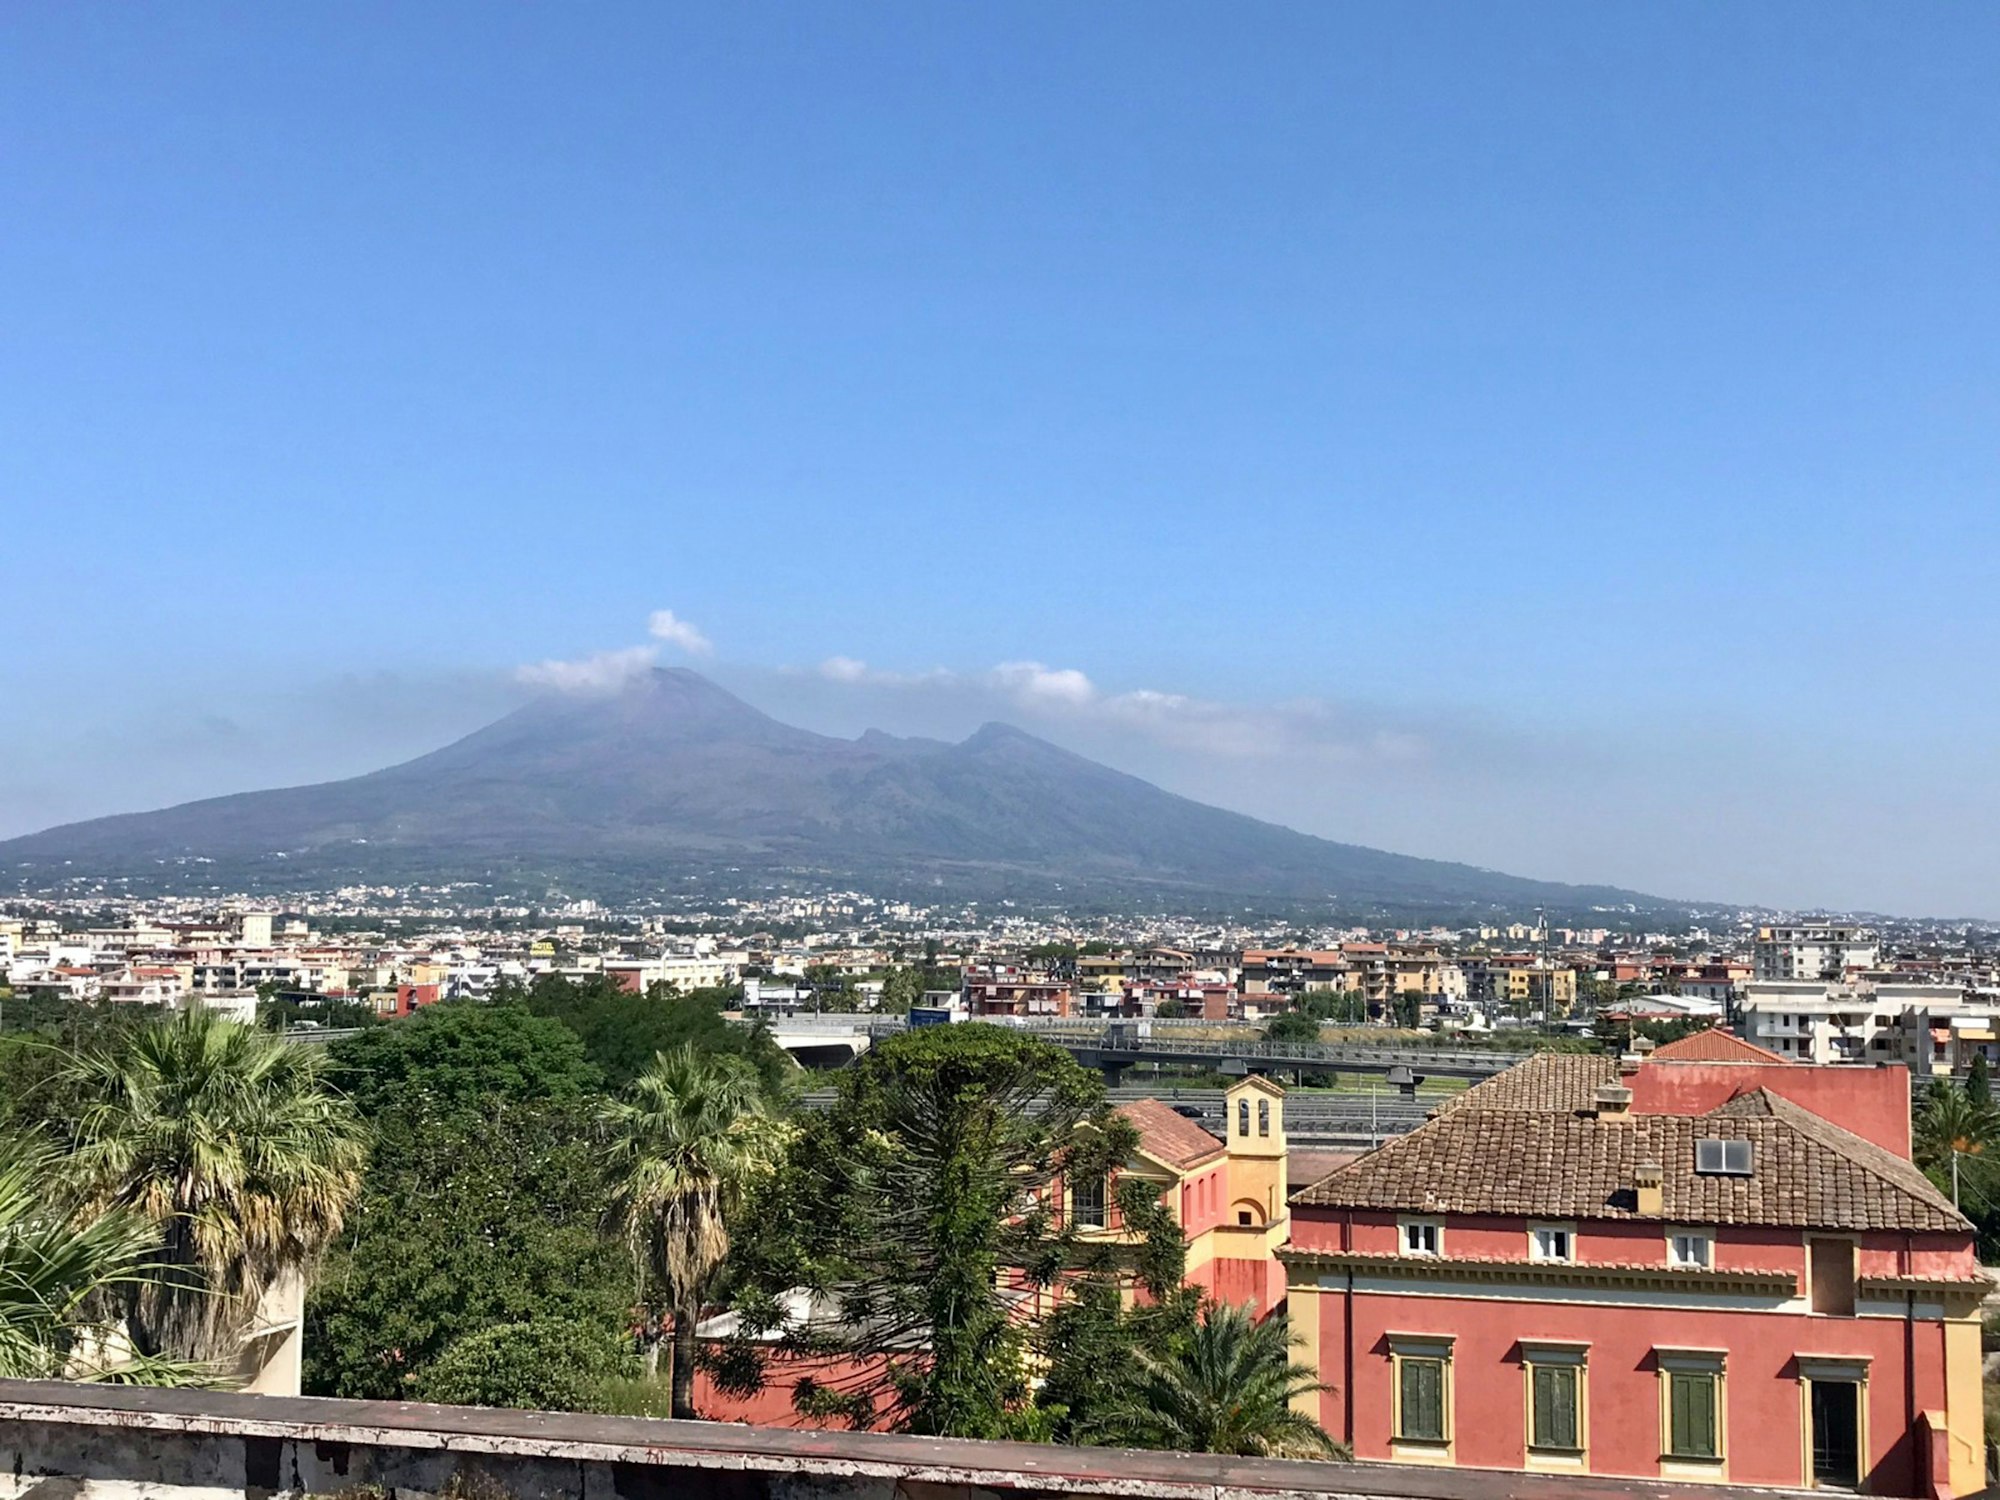 Ebenfalls zu Italien gehört der Vesuv. Sein Name ist unweigerlich mit der bekanntesten Katastrophe verbunden: Pompeji. An seine Flanken schmiegt sich die Millionenmetropole Neapel. In unmittelbarer Nähe brodeln die Phlegräischen Felder.